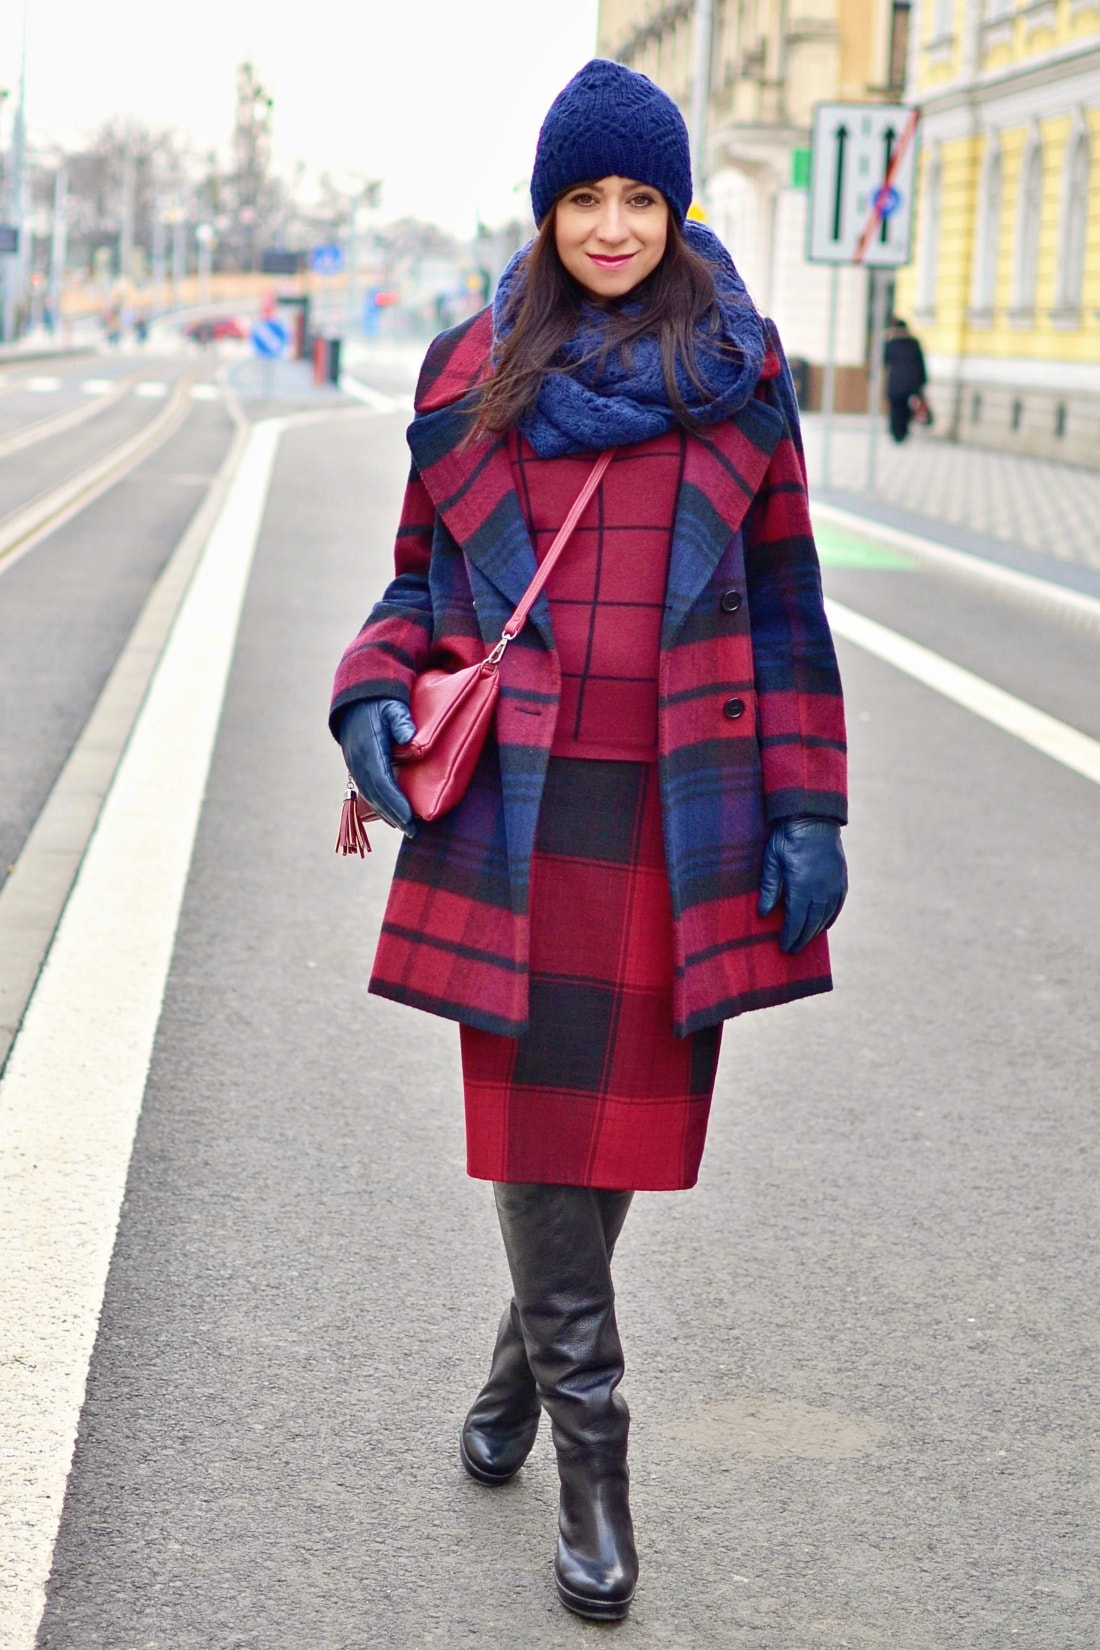 AKO NOSIŤ VZORY_Katharine-fashion is beautiful_Vzorovaný kabát_Katarína Jakubčová_Fashion blogger